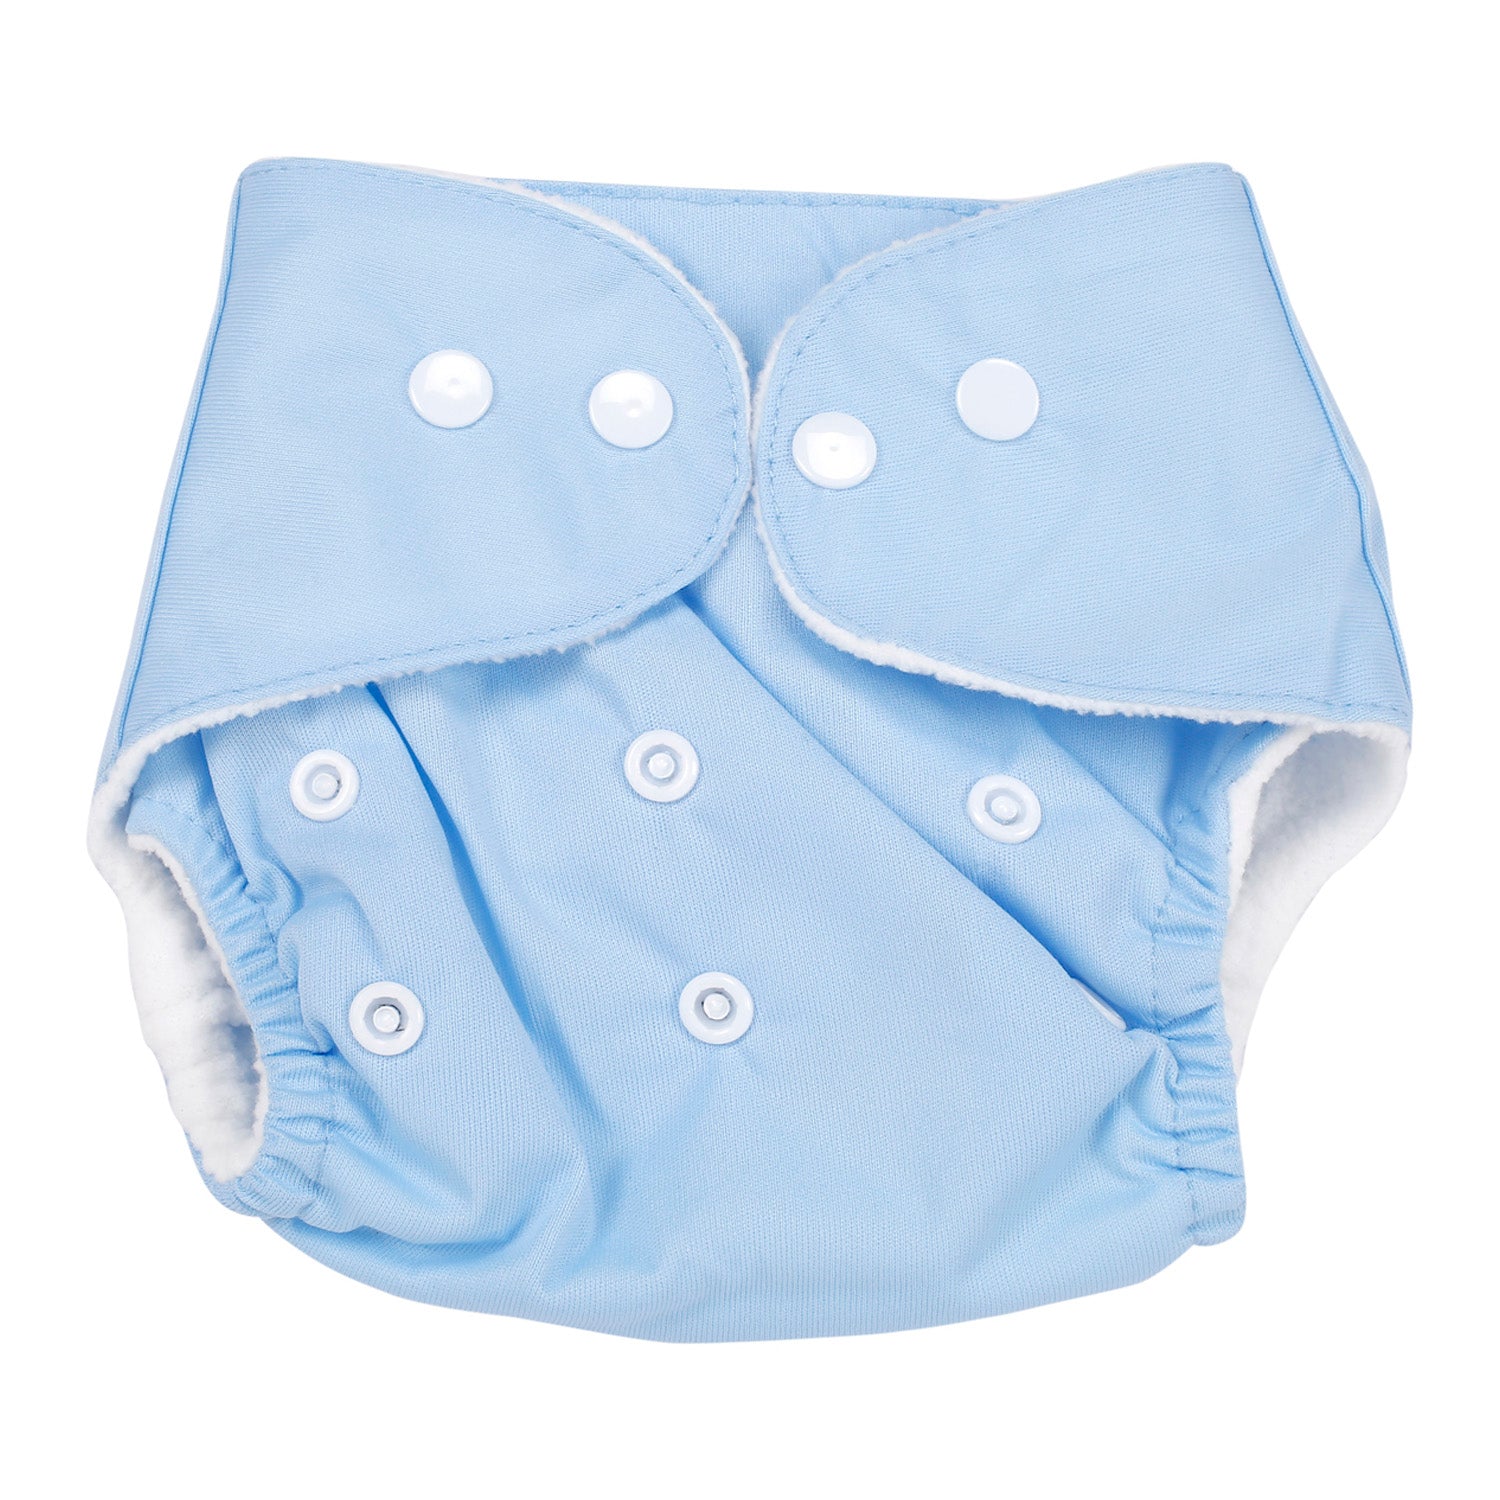 Plain Blue Reusable Diaper